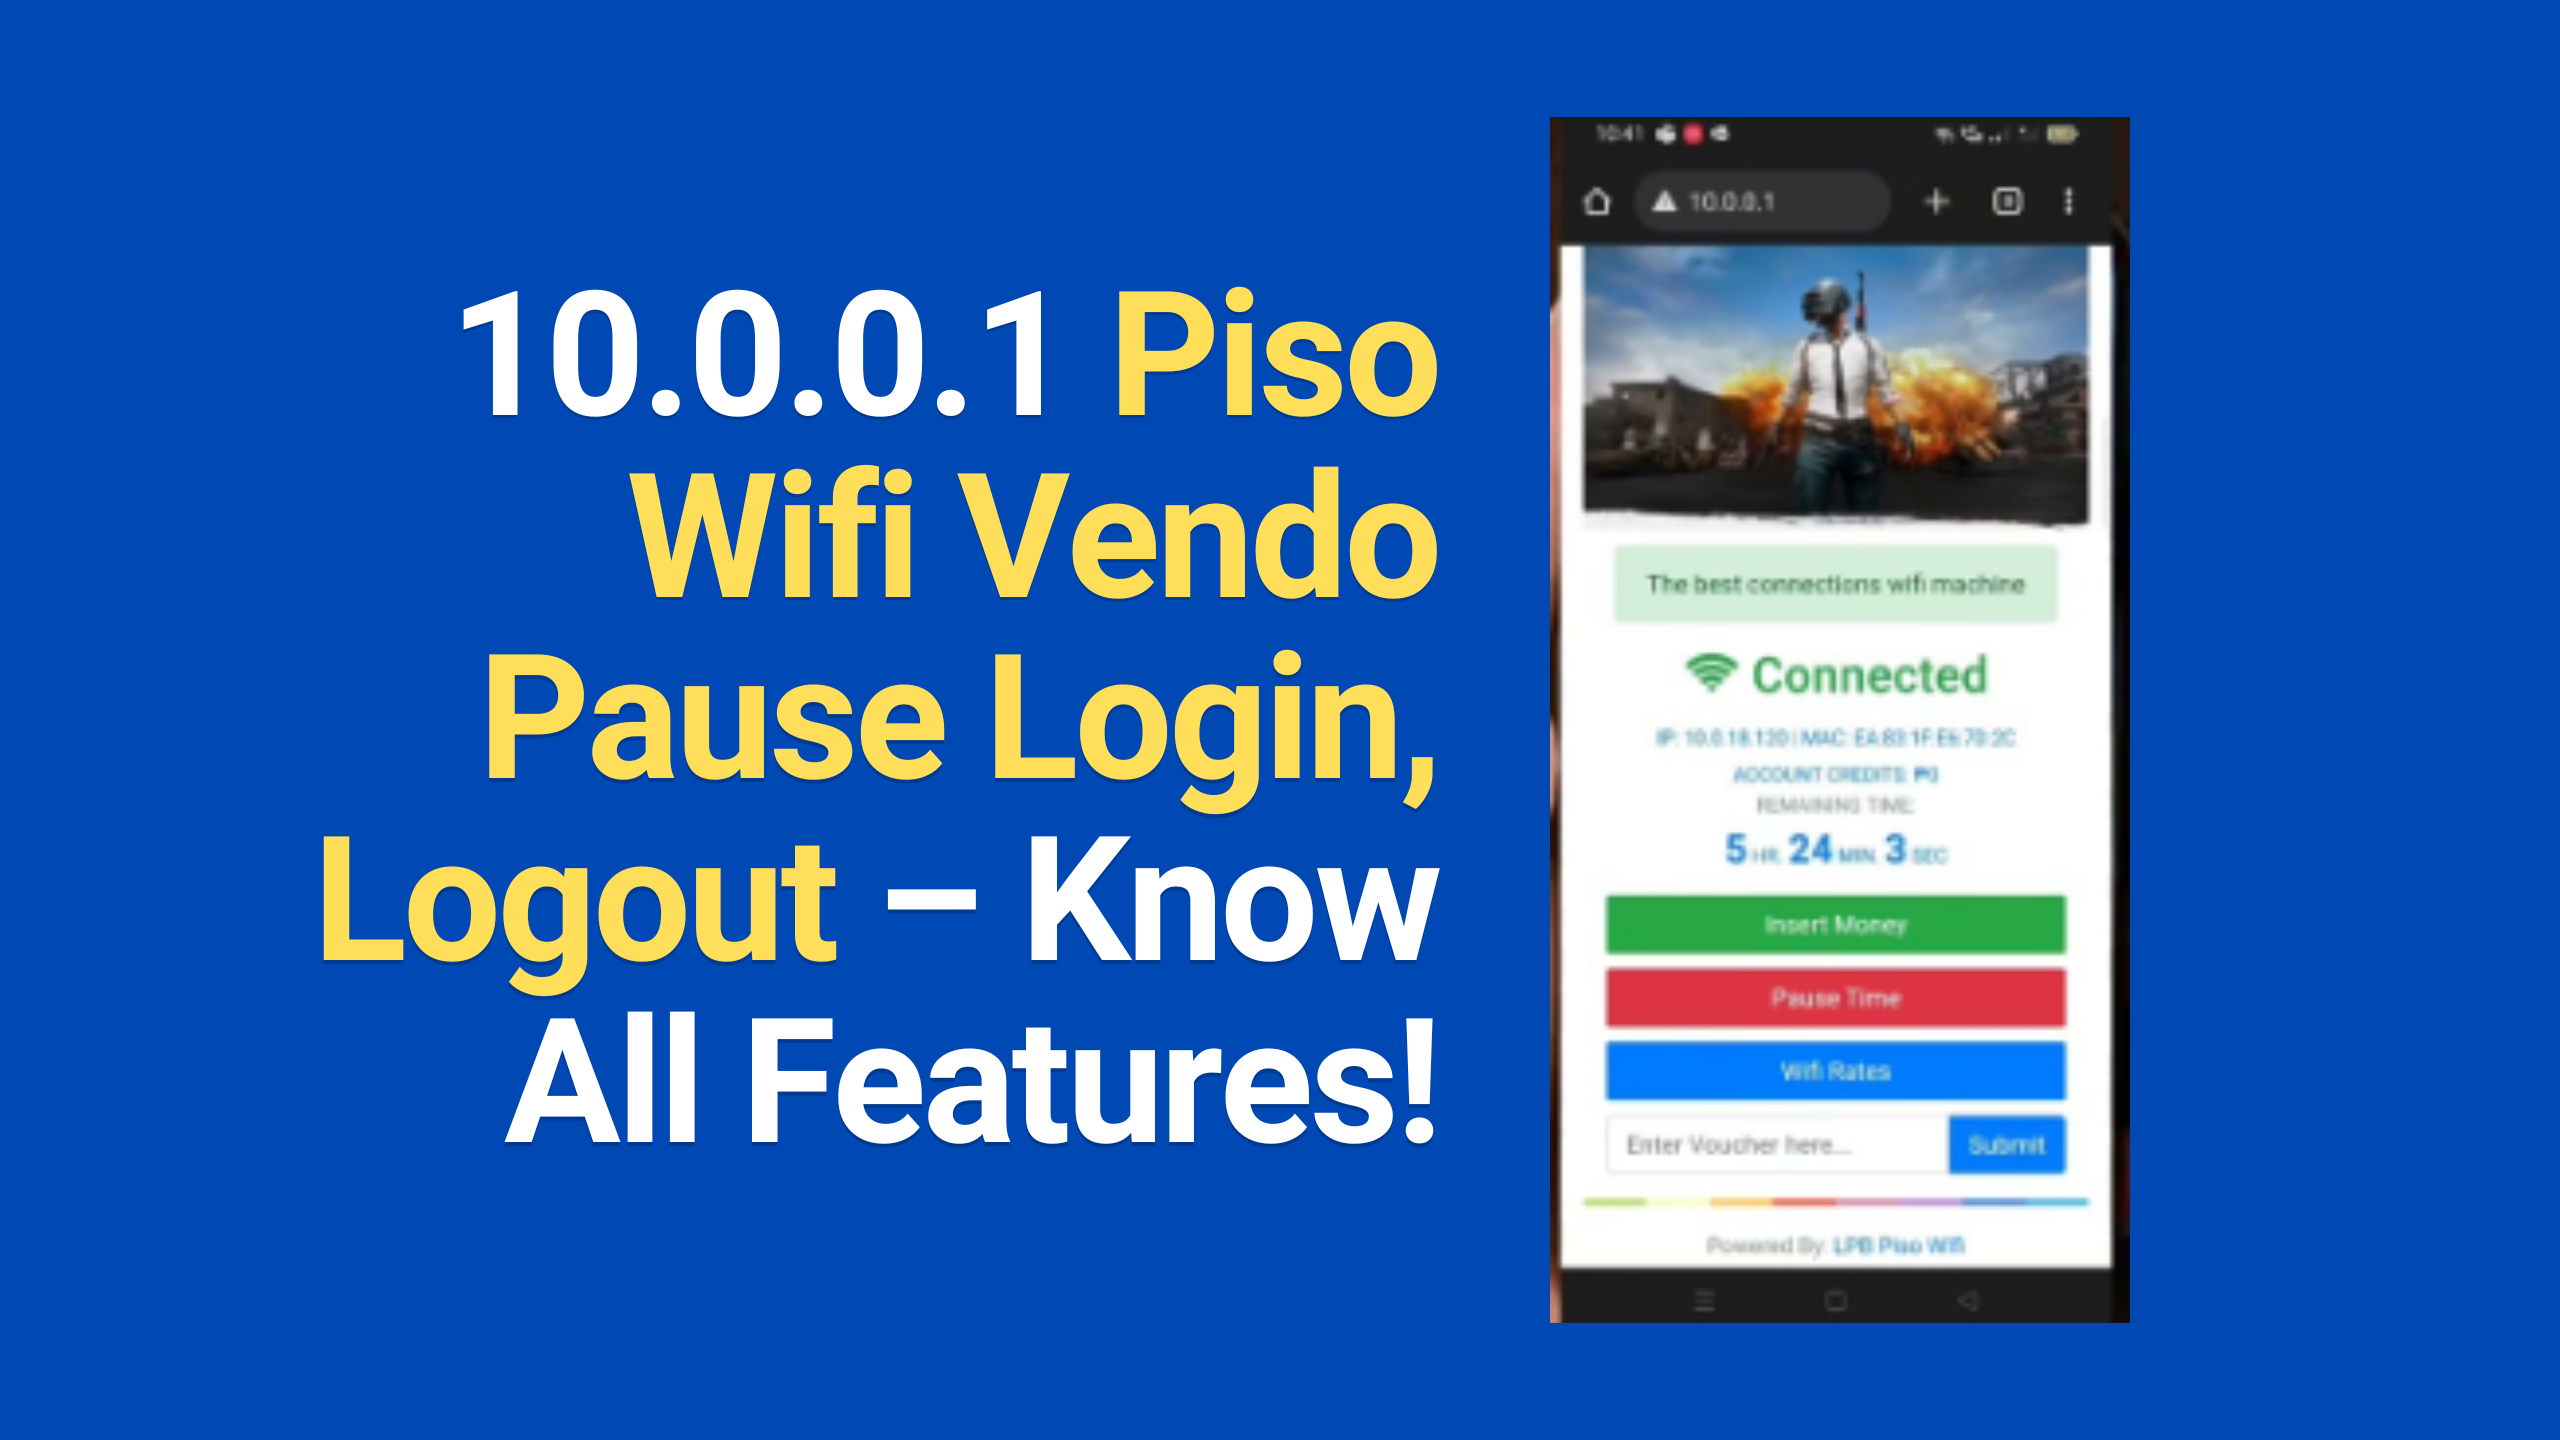 10.0.0.1 Piso Wifi Vendo Pause Login